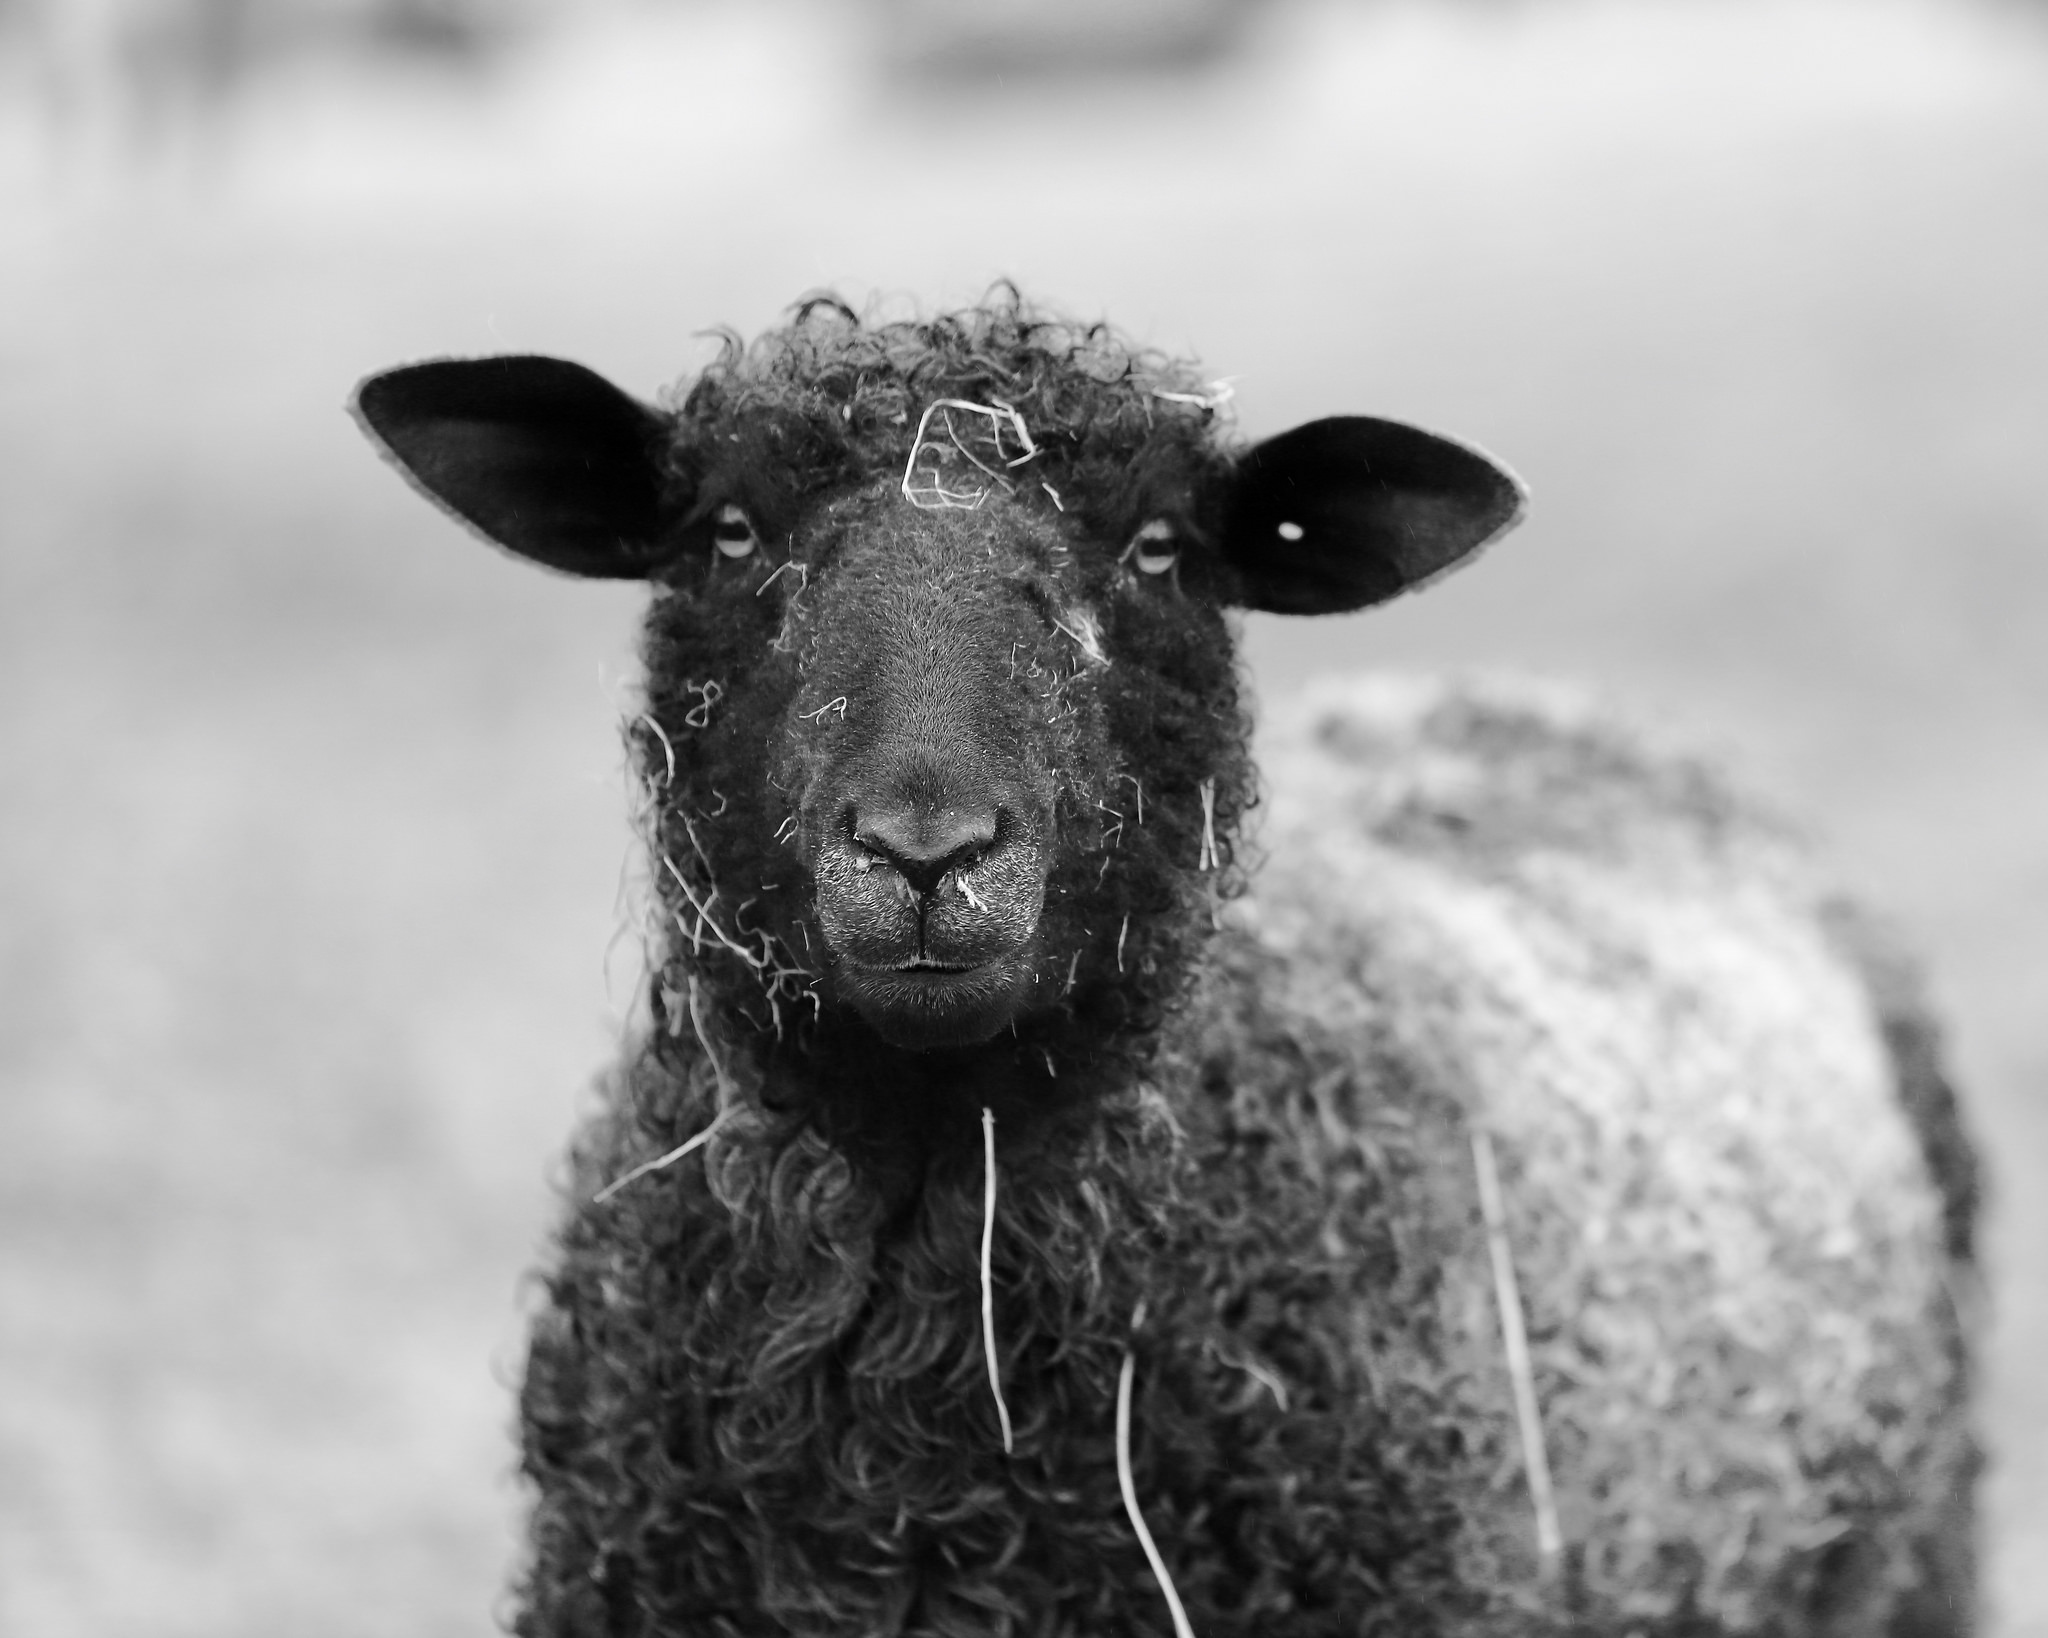 The Sheep at Sawkill Farm